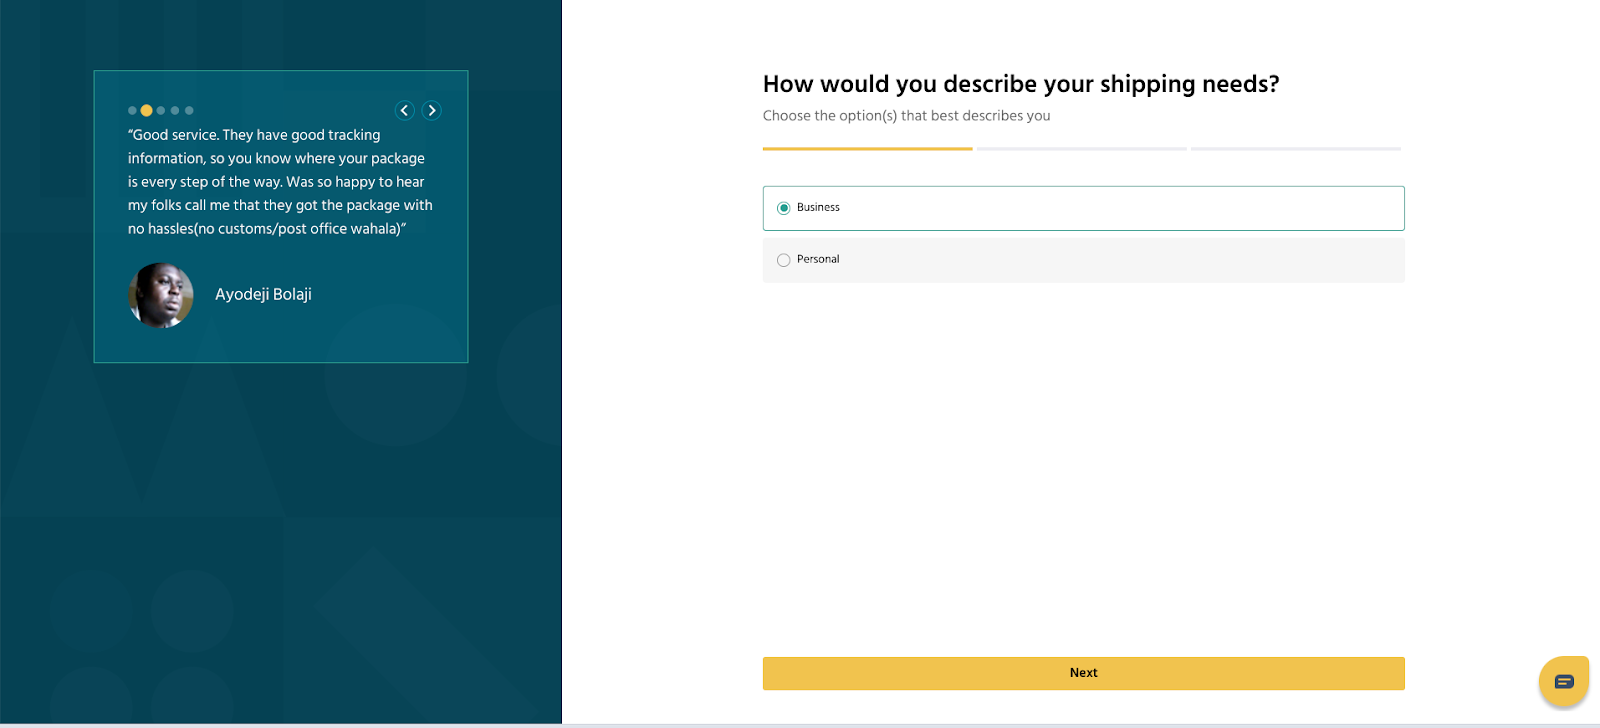 Describe your shipping needs